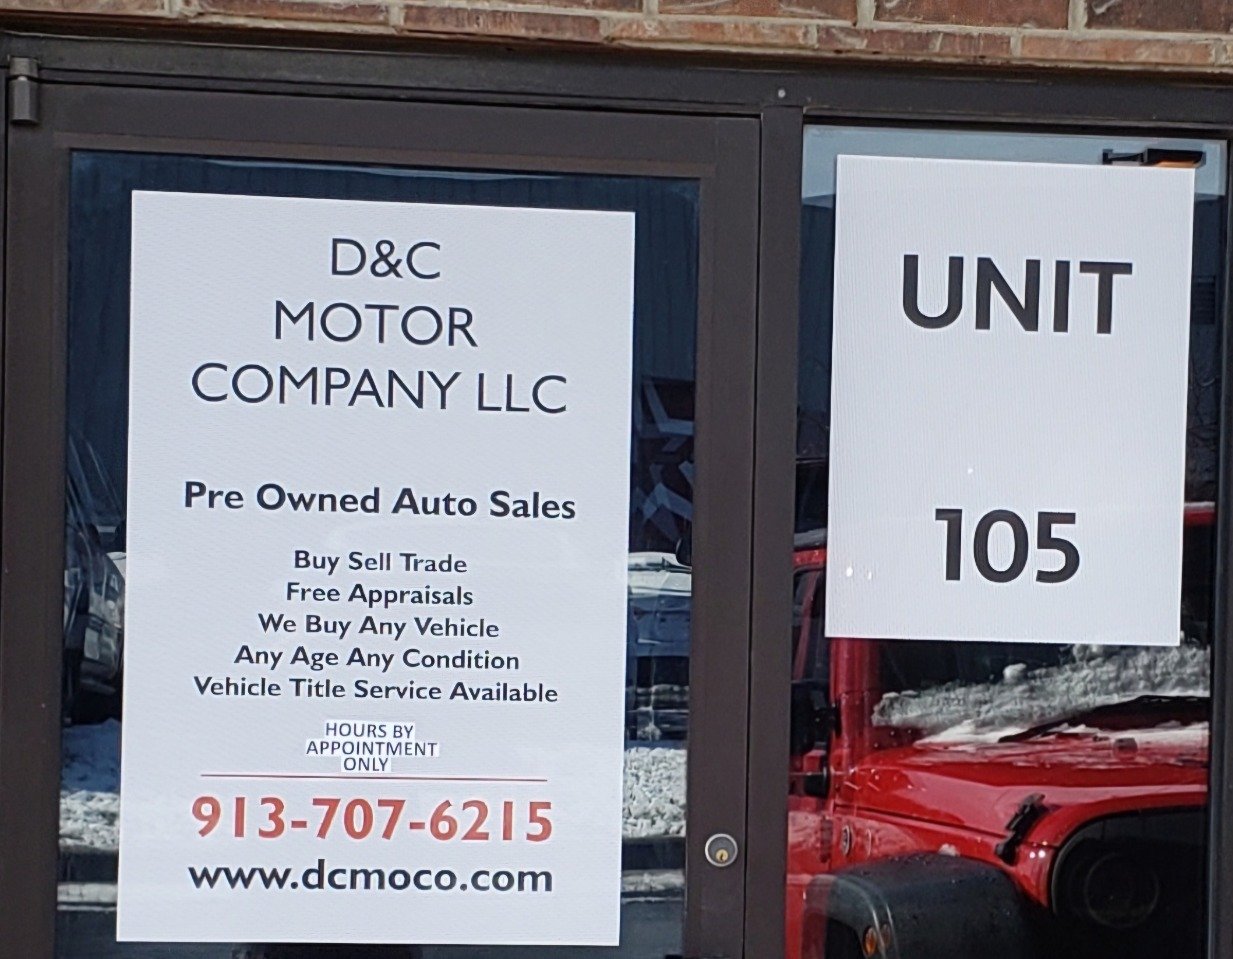 D&C Motor Company LLC